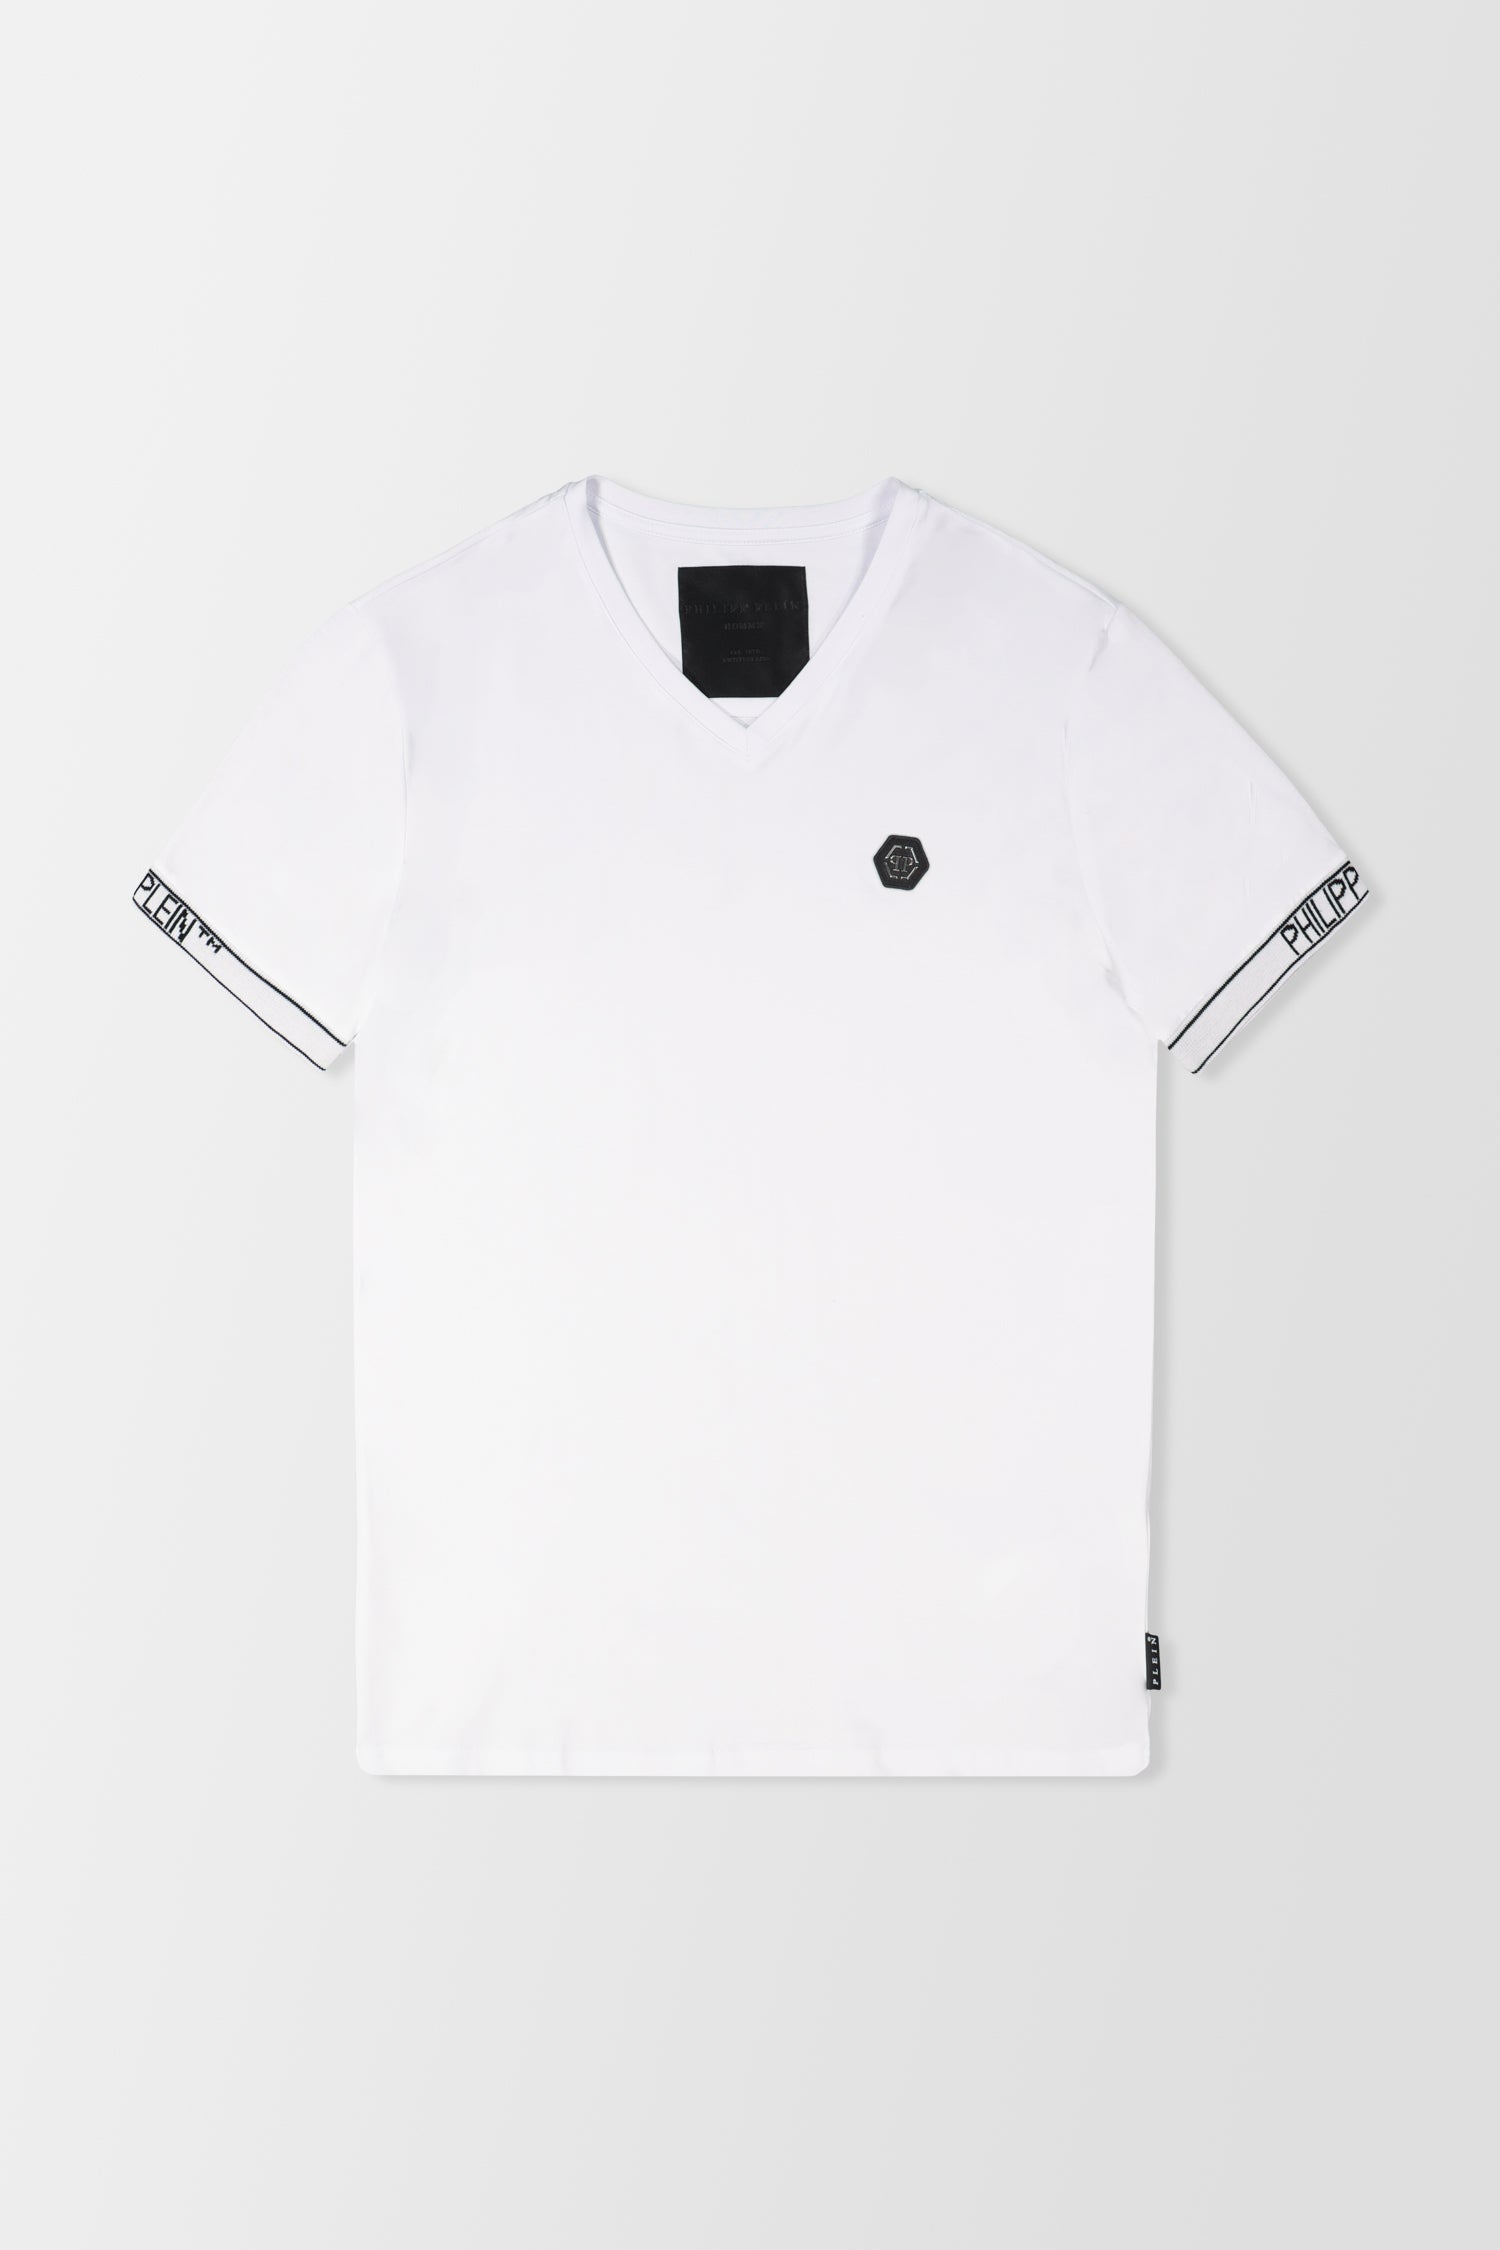 Philipp Plein White V-Neck SS 2 T-Shirt